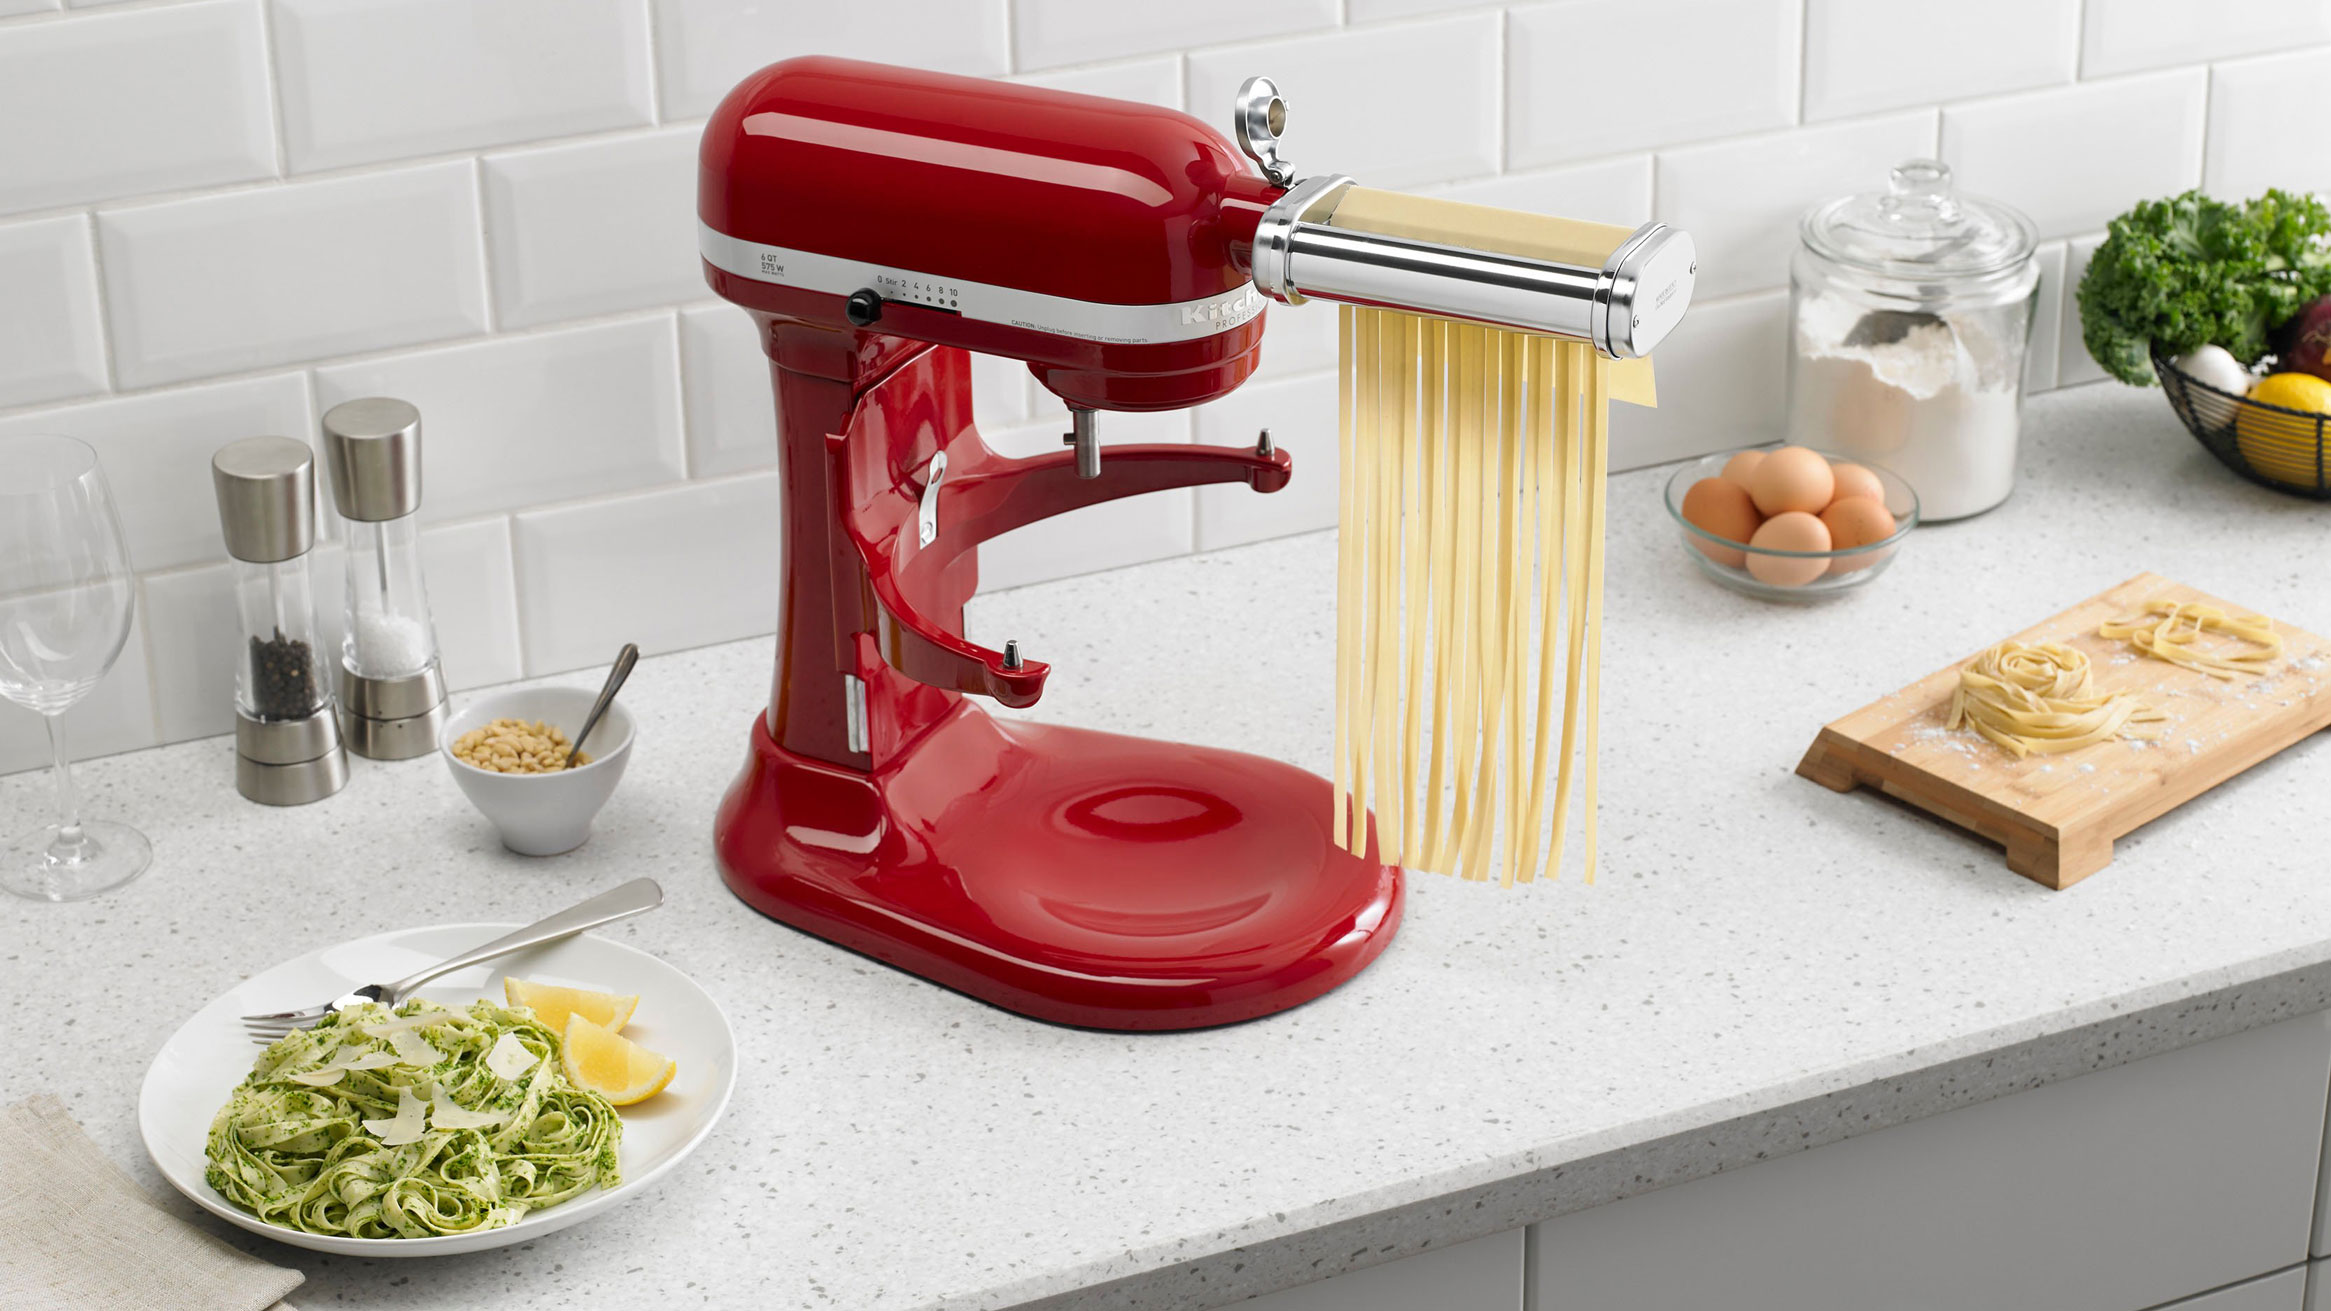 KitchenAid pasta attachements